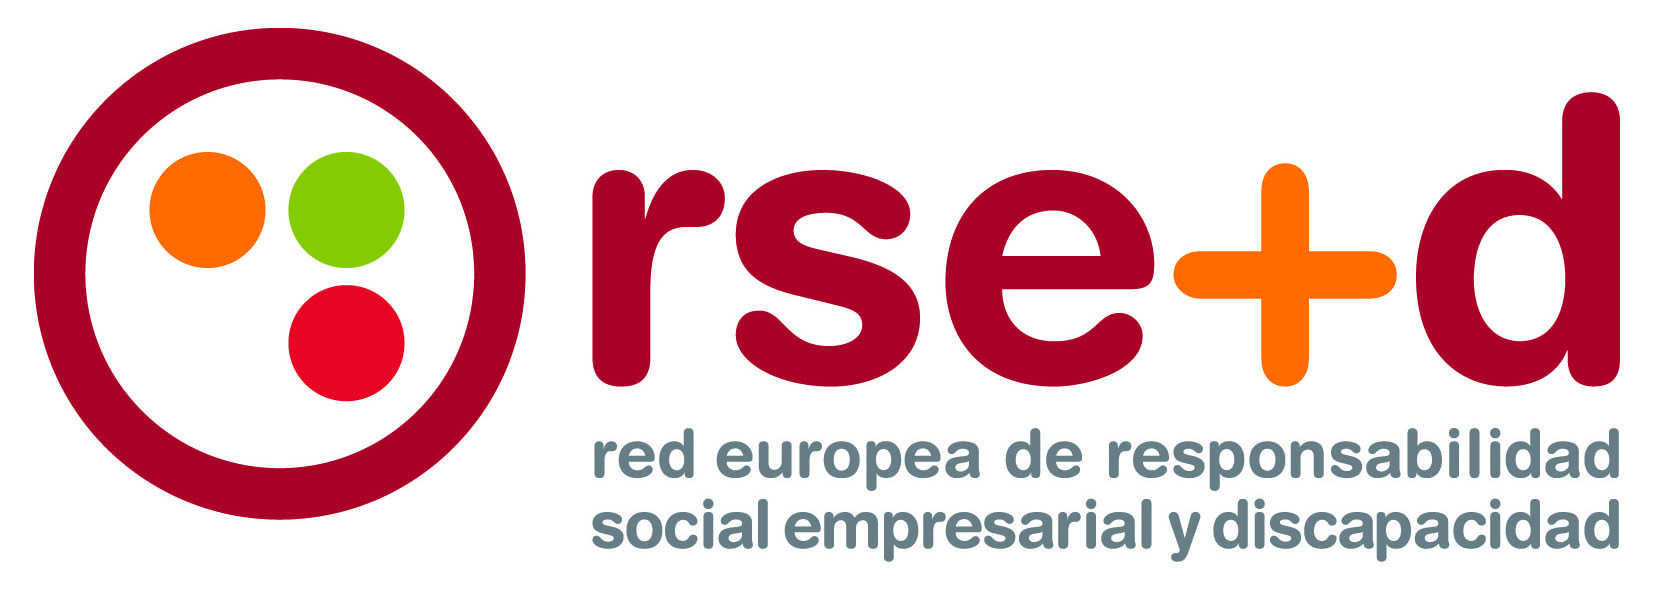 Presentada la Red Europea de Responsabilidad Social Empresarial y Discapacidad 